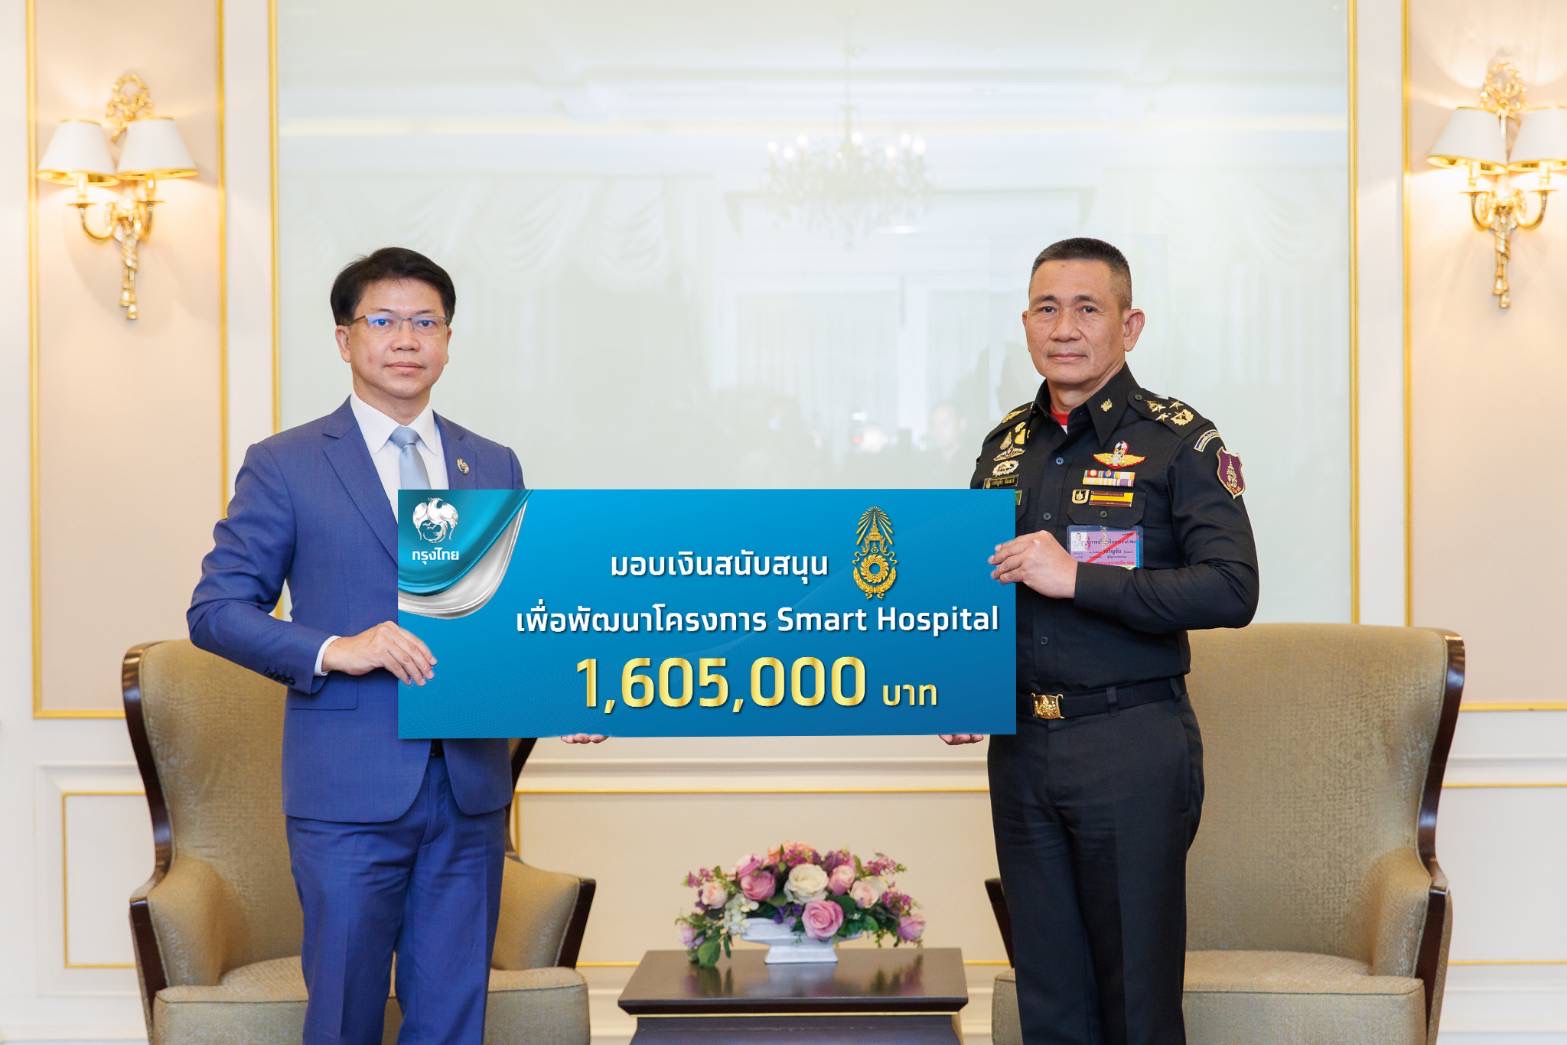 กรุงไทยสนับสนุนกองทัพบก มอบเงินสมทบทุนโครงการ Smart Hospital